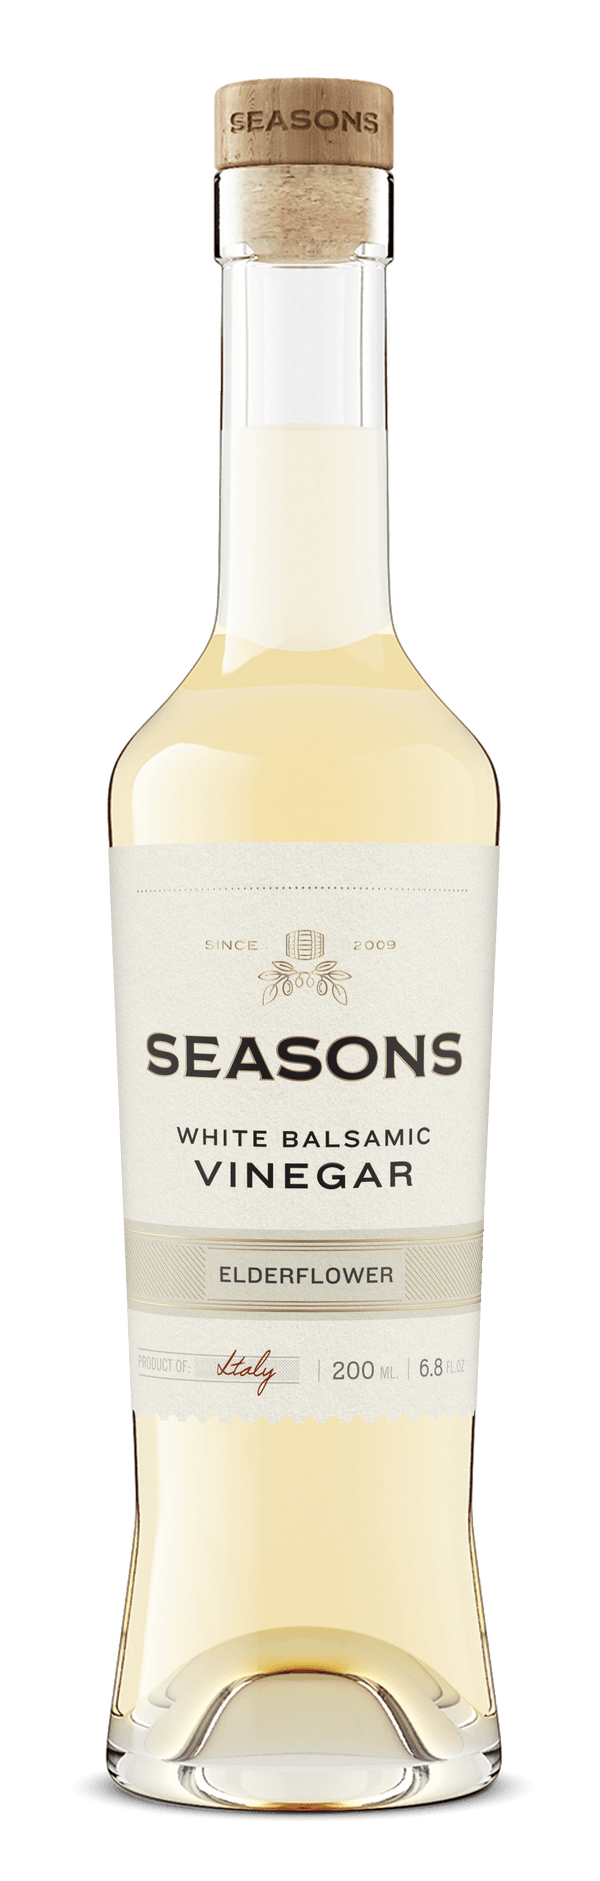 Seasons Olive Oil & Vinegar White Balsamic Elderflower White Balsamic Vinegar